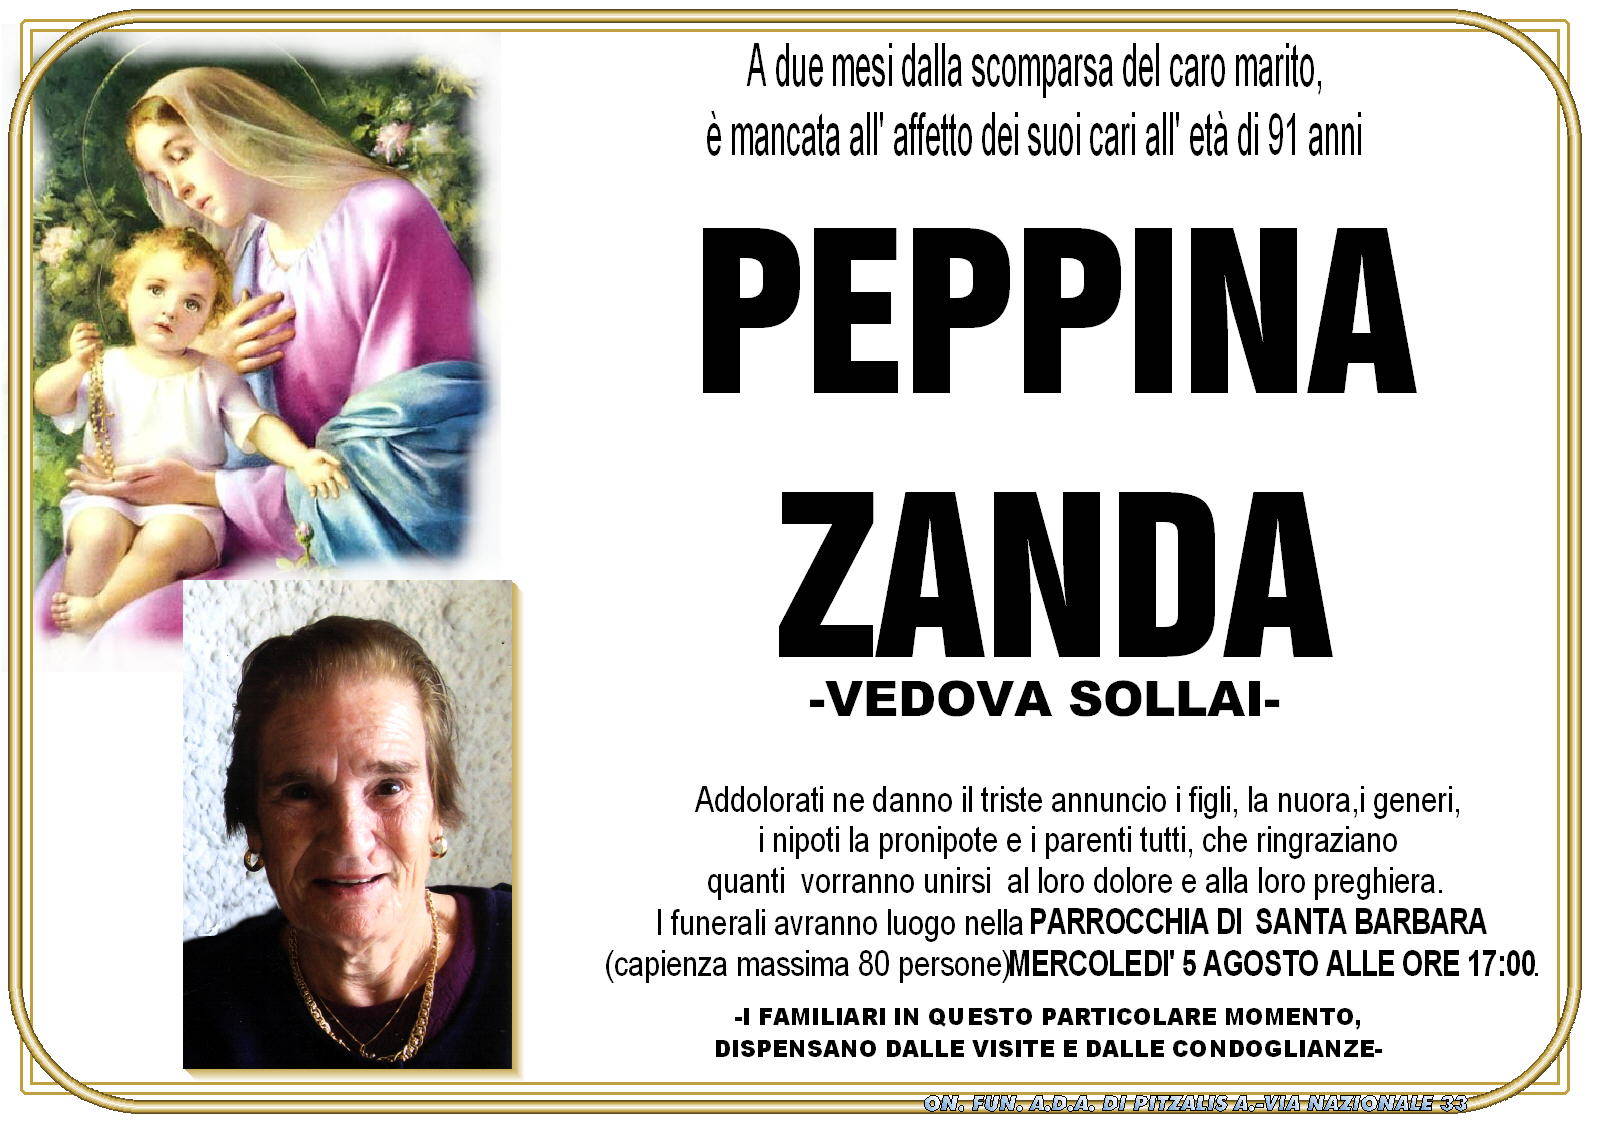 Peppina Zanda